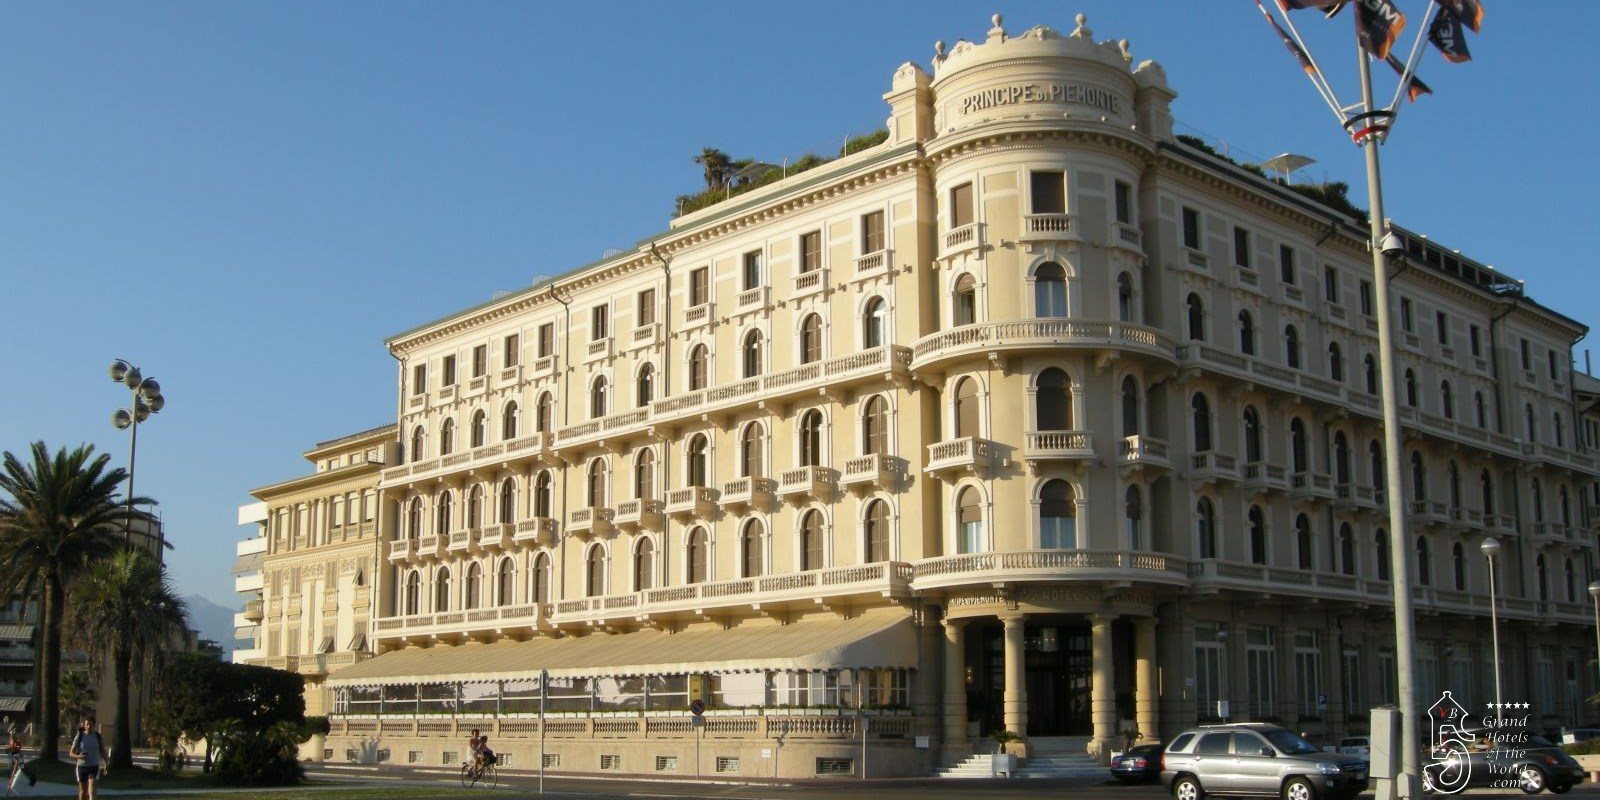 Grand Hotel Principe di Piemonte in Viareggio